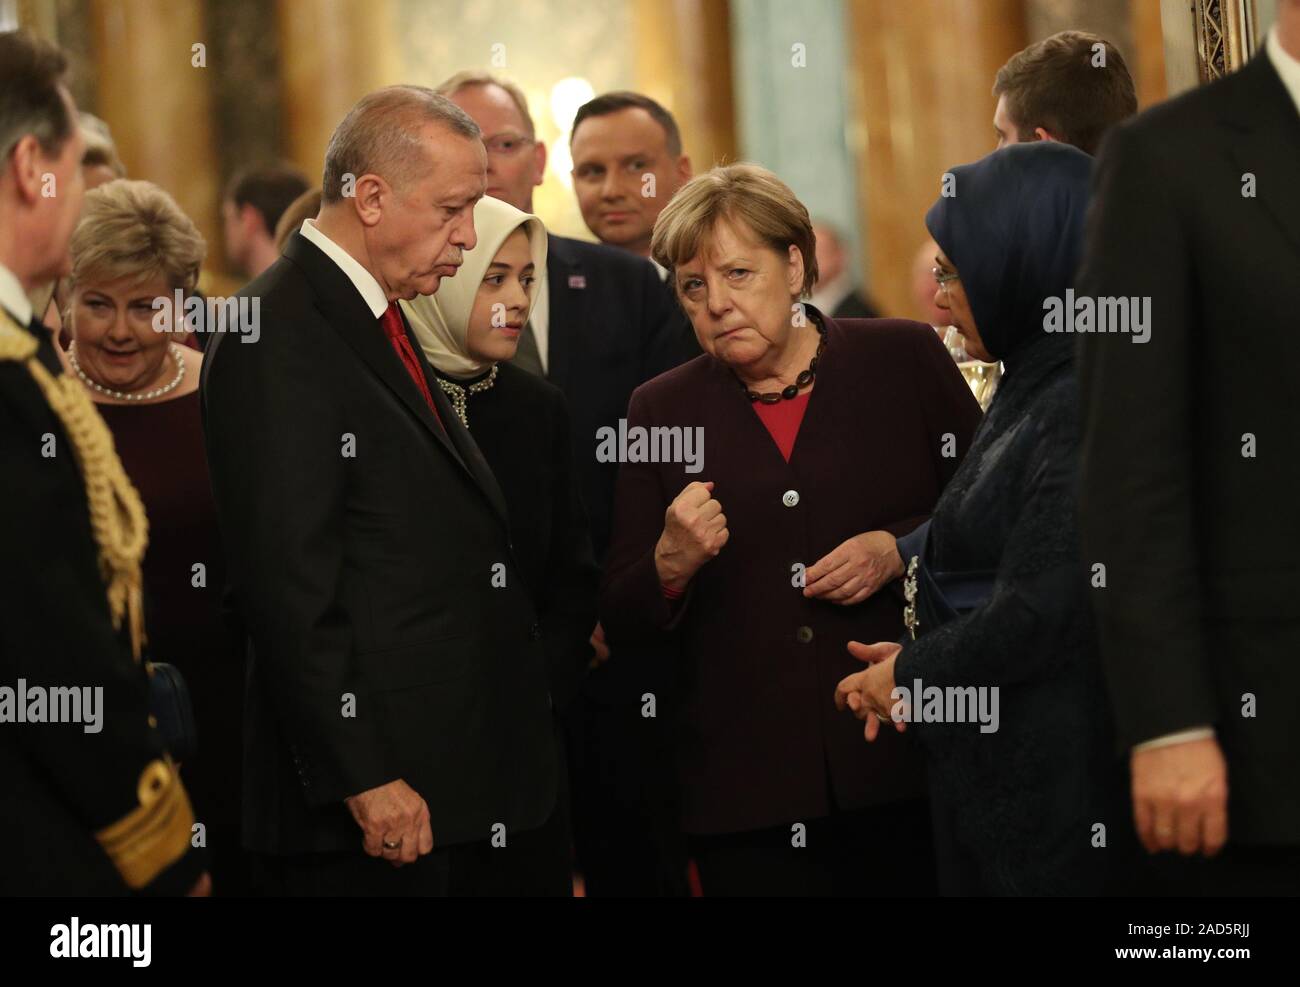 Türkischen Präsidenten Recep Tayyip Erdogan mit Bundeskanzlerin hat Angela Merkel beim Empfang im Buckingham Palace, London, als Staats- und Regierungschefs der NATO-Mitglieder sammeln bis 70 Jahre der Allianz. Stockfoto